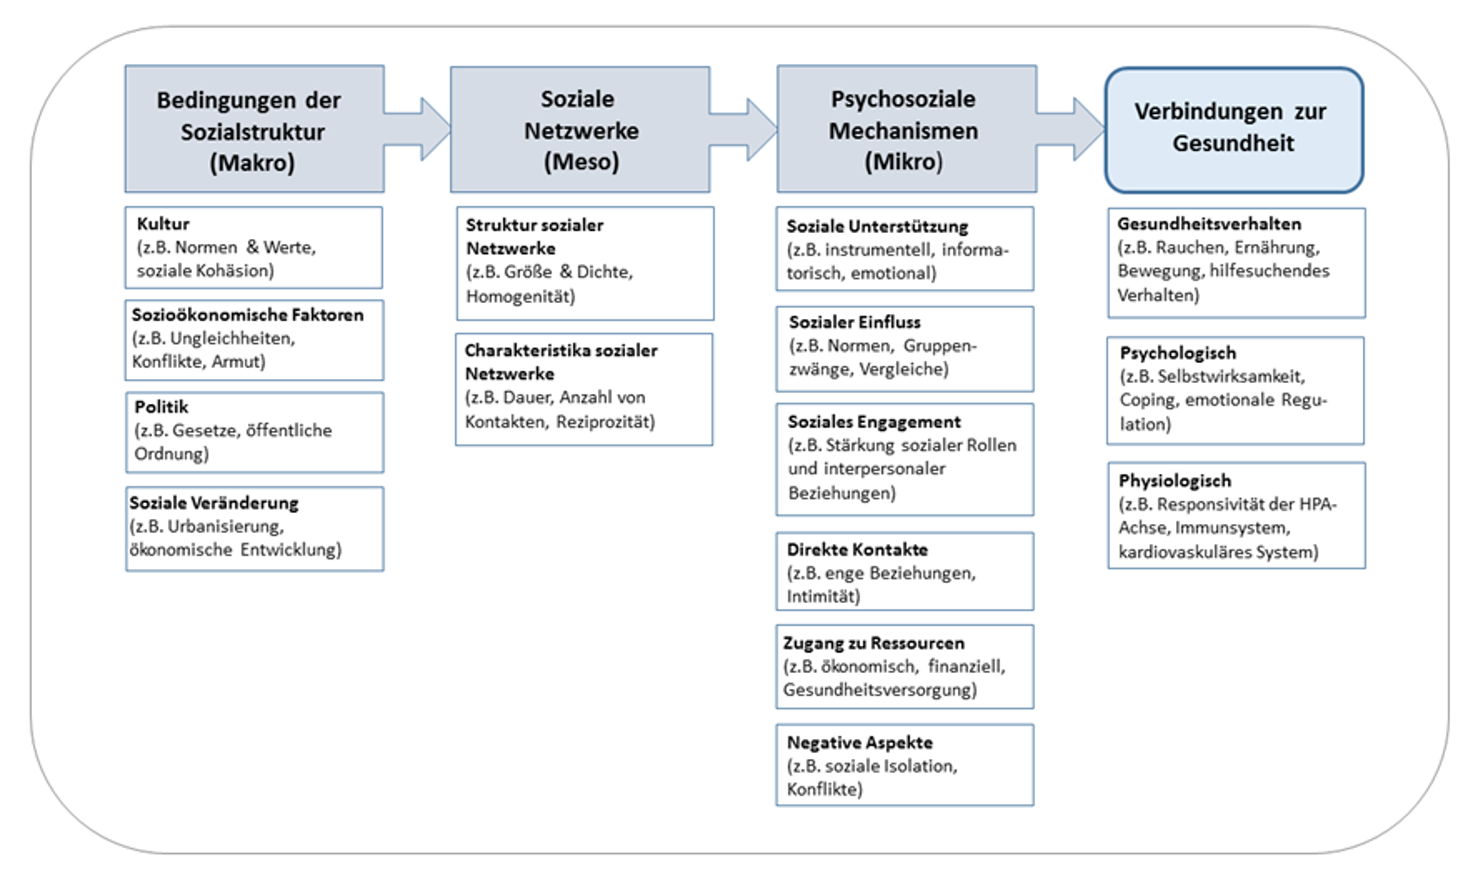 Abbildung 2: Erklärungsmodell zum Zusammenhang zwischen sozialen Beziehungen und Gesundheit nach Berkman, eigene Darstellung 